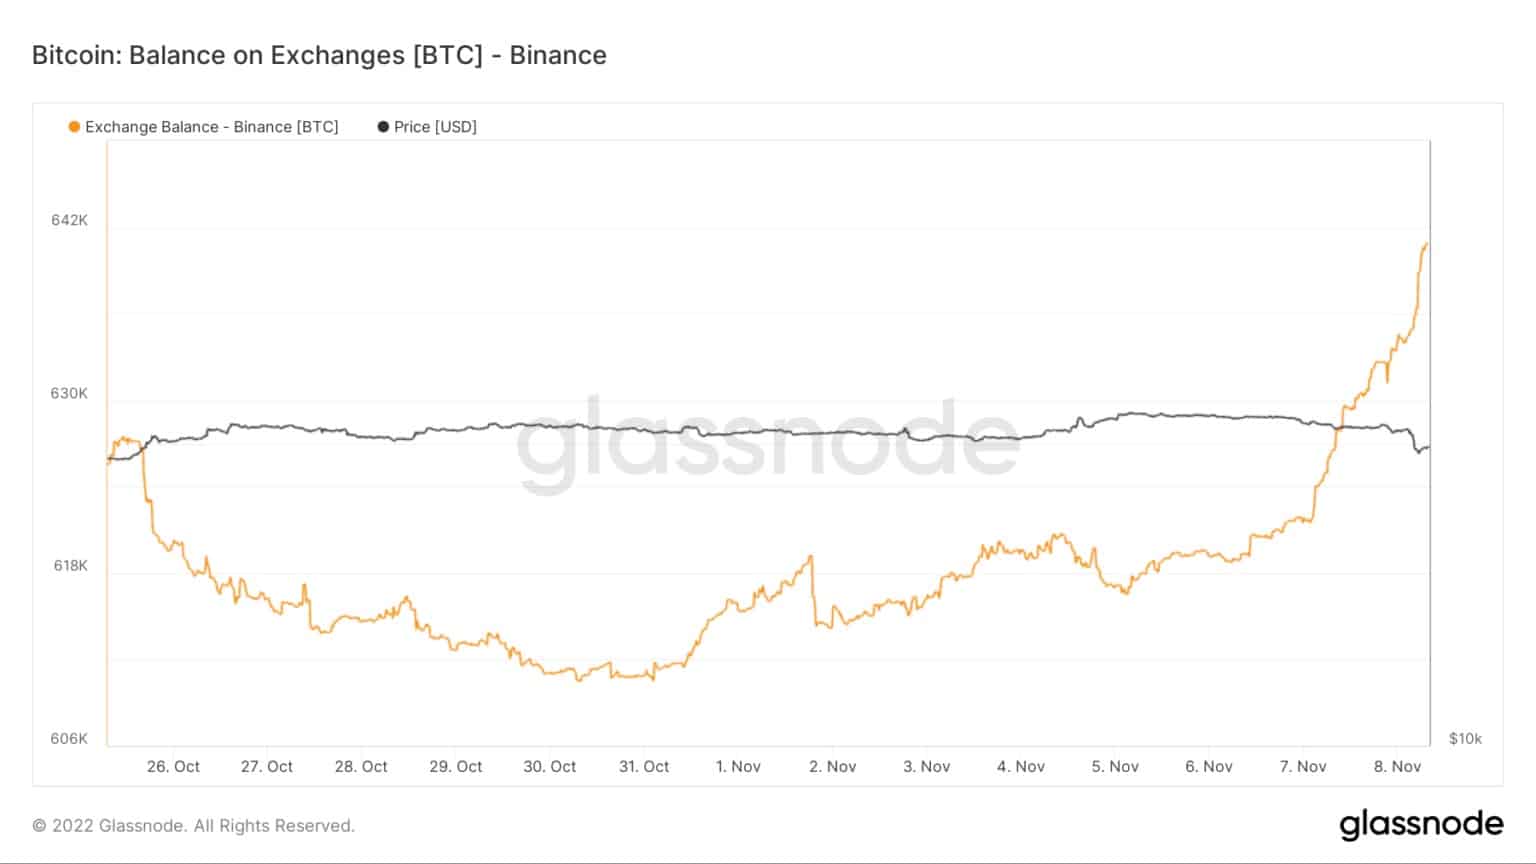 Balance de Bitcoin de Binance de octubre a noviembre de 2022